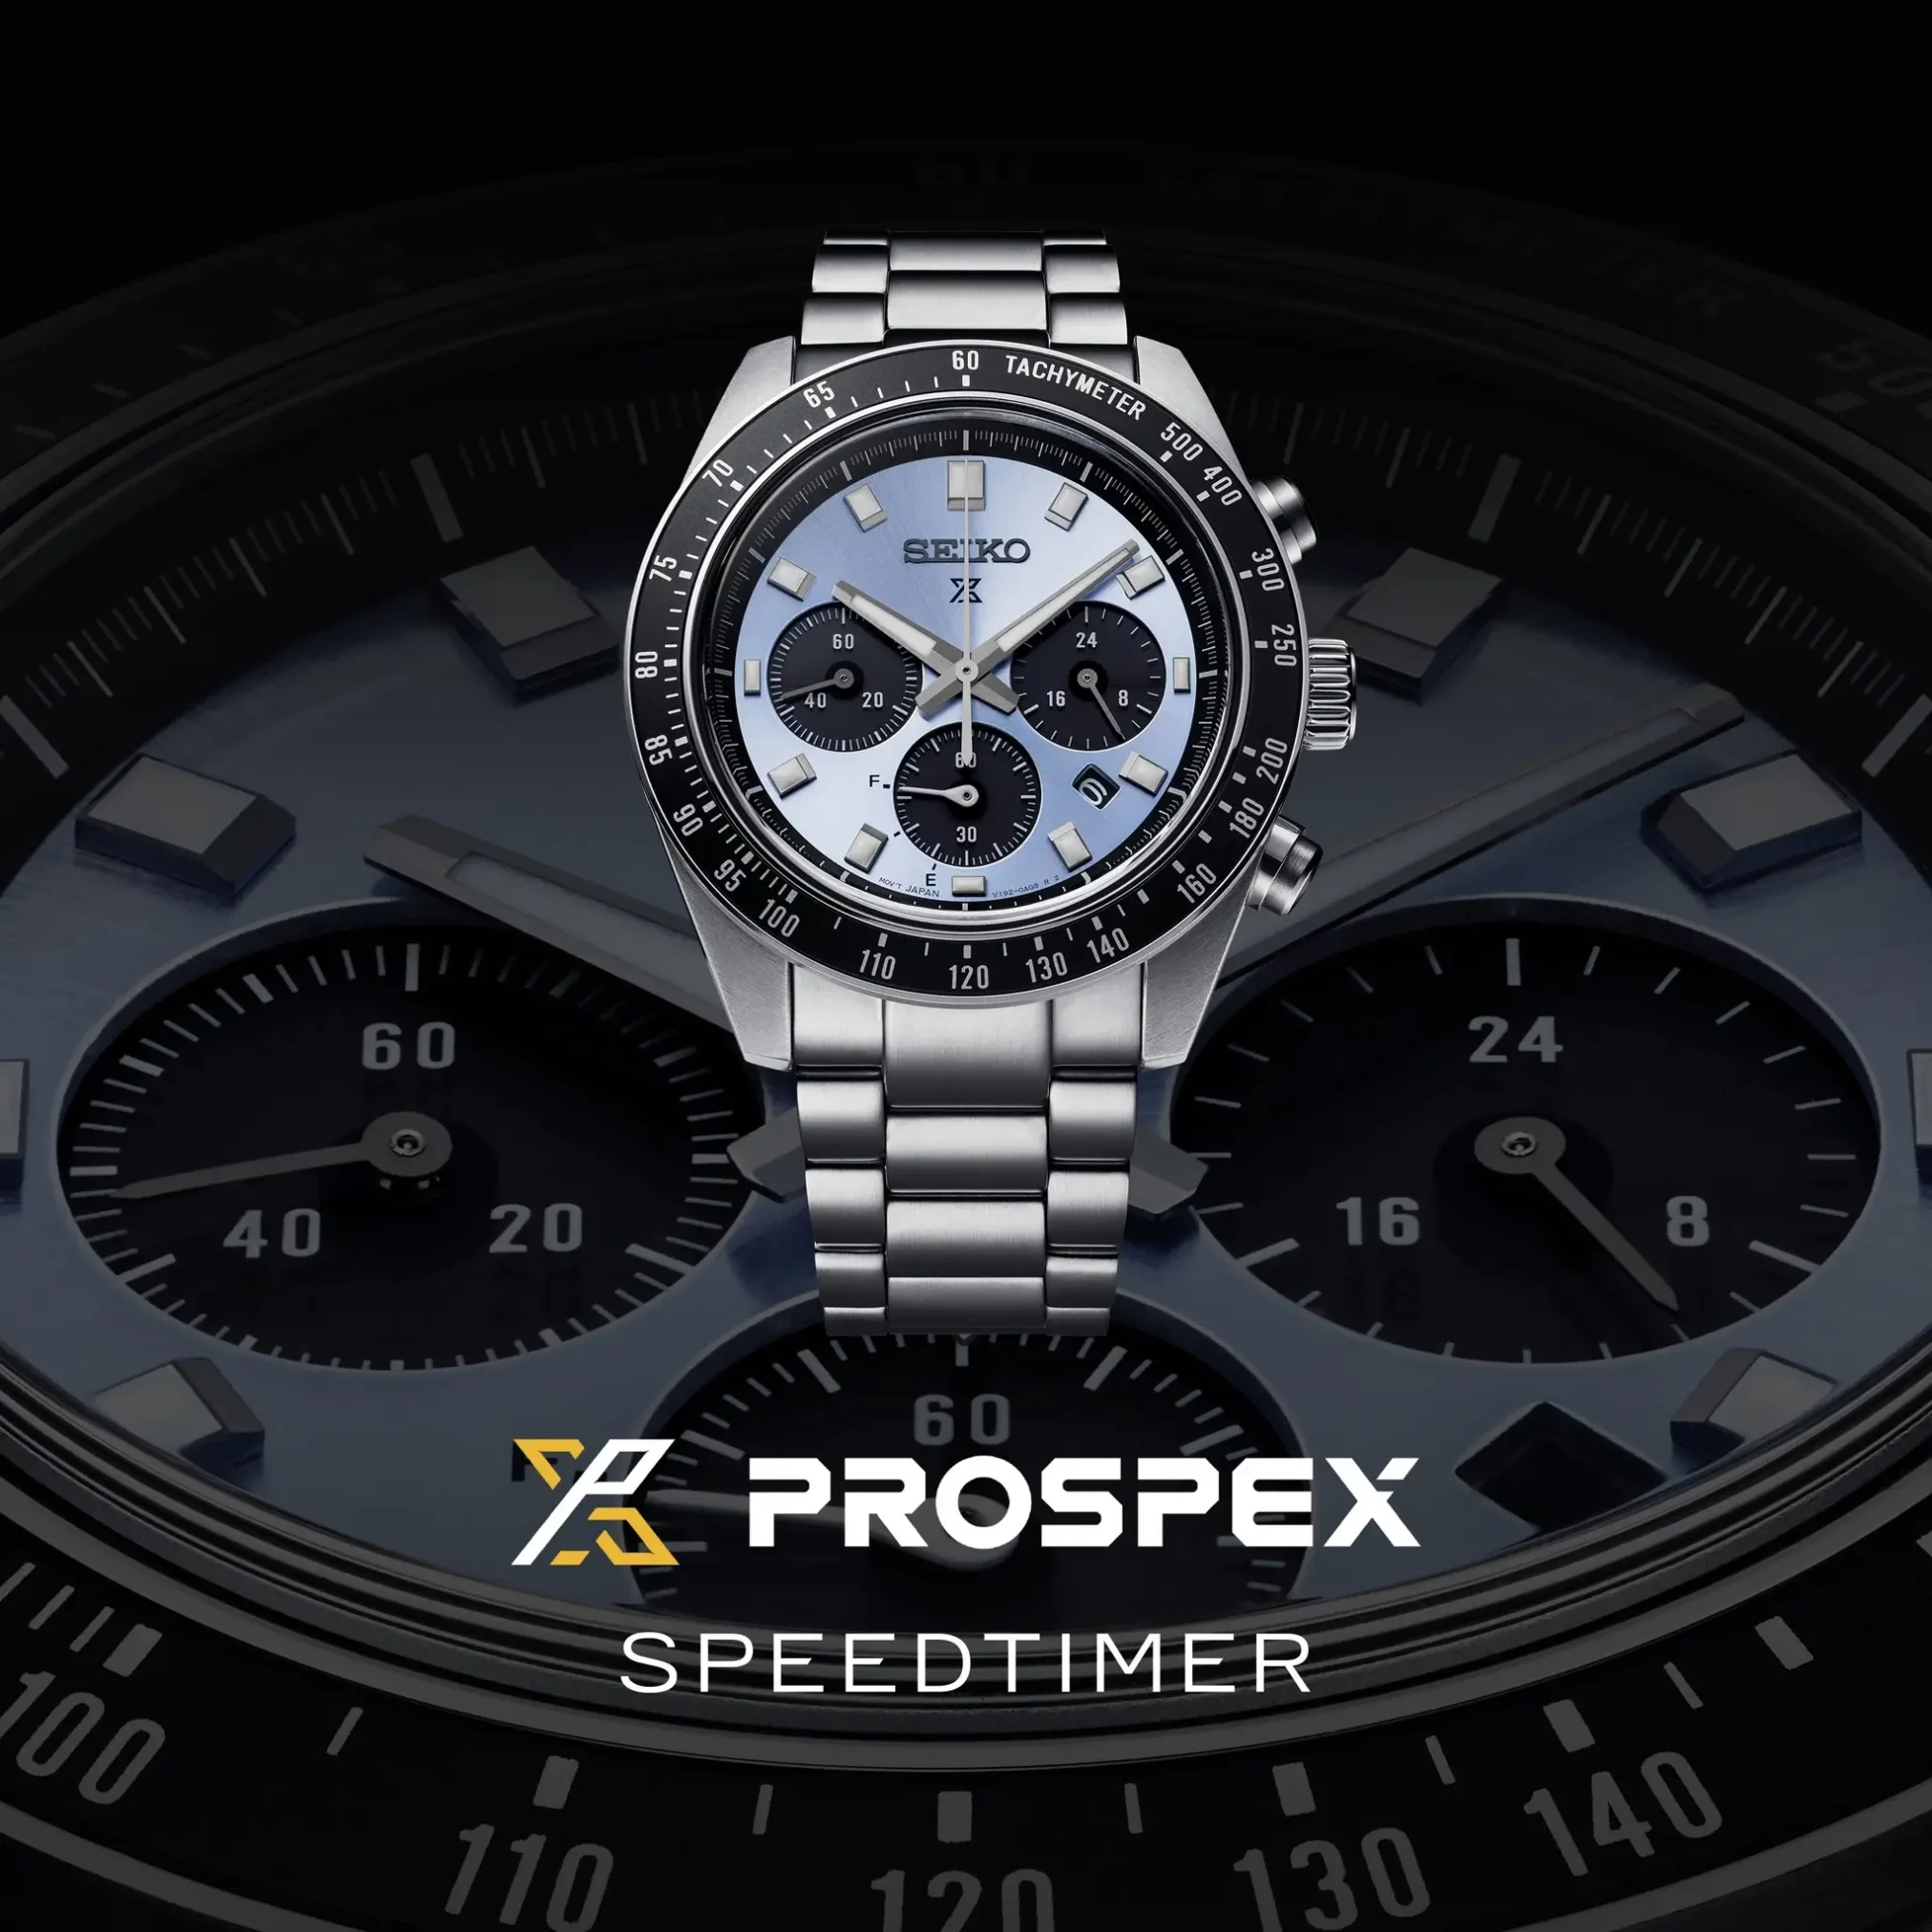 Đồng hồ Seiko Prospex Speedtimer Solar Chronograph SBDL109 (SSC935) mặt số màu xanh. Dây đeo bằng thép. Thân vỏ bằng thép.